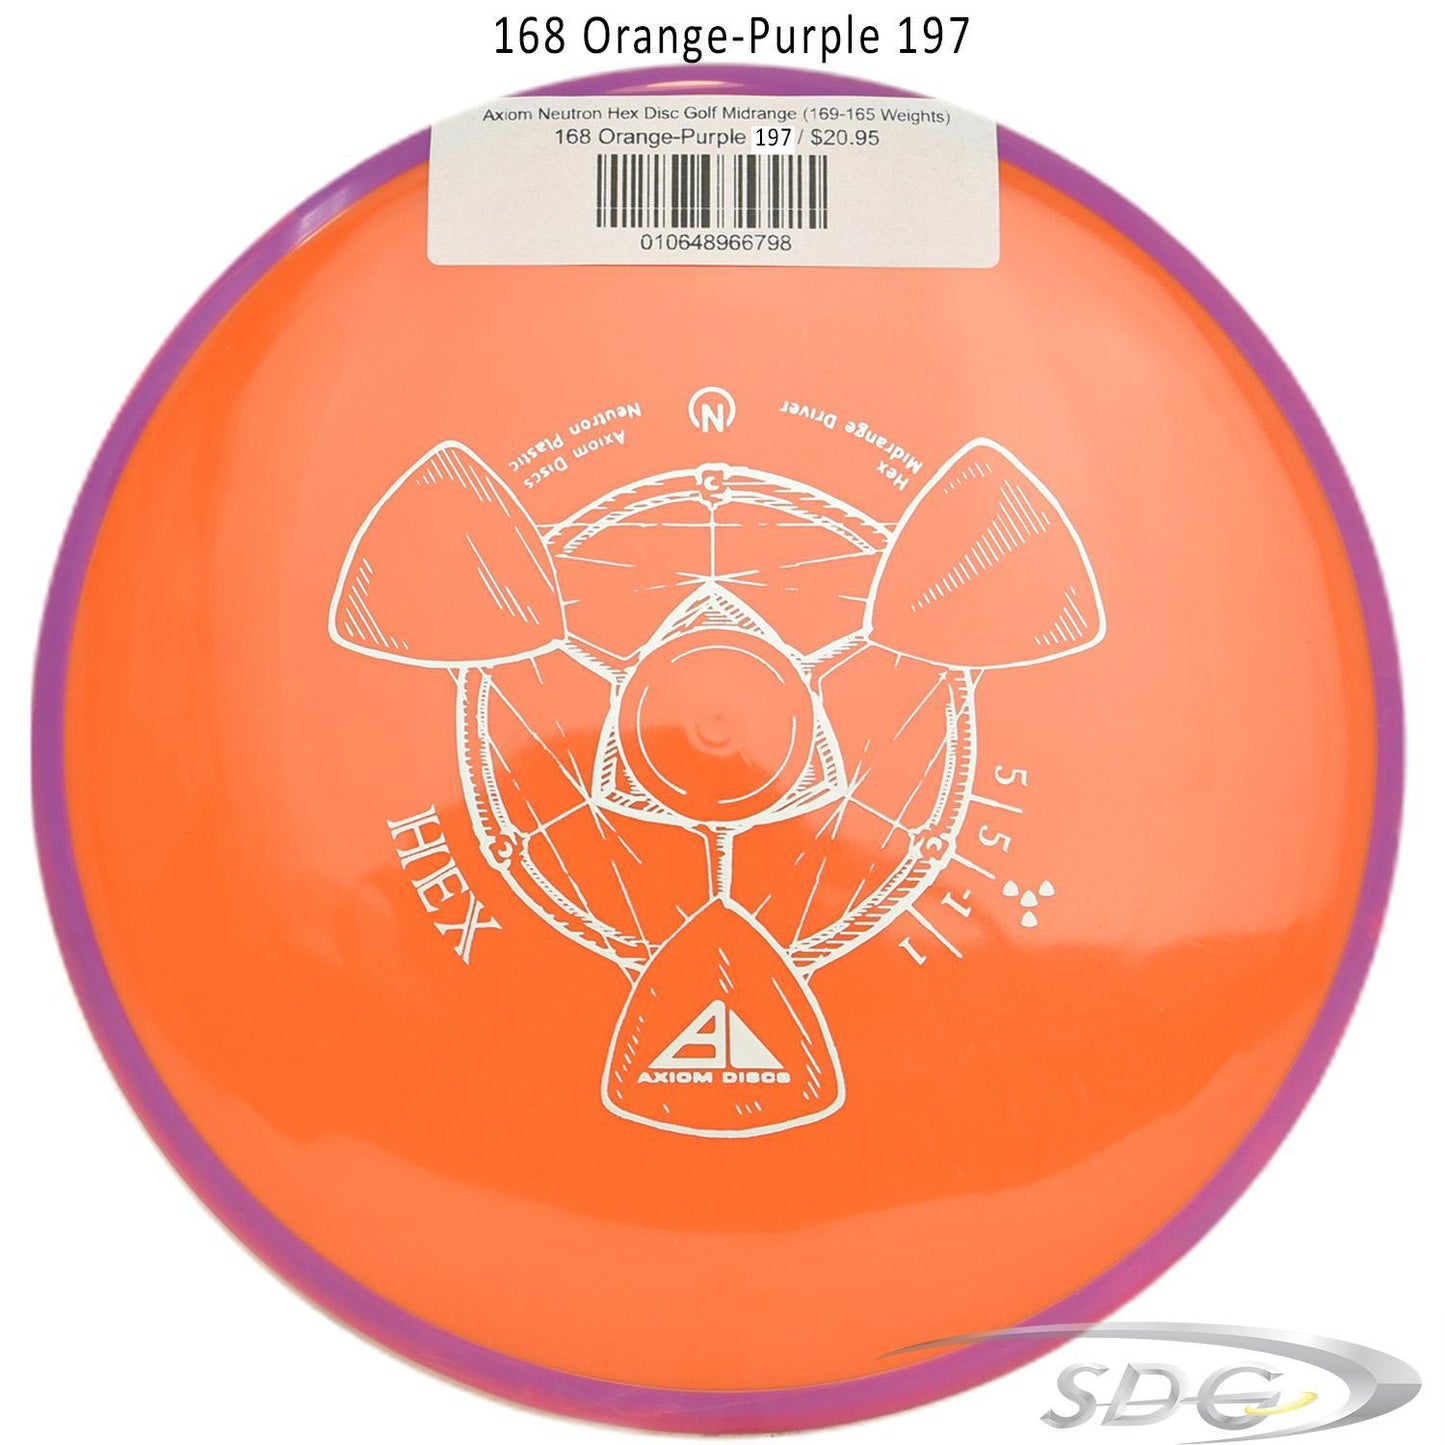 axiom-neutron-hex-disc-golf-midrange-169-165-weights 168 Orange-Purple 197 